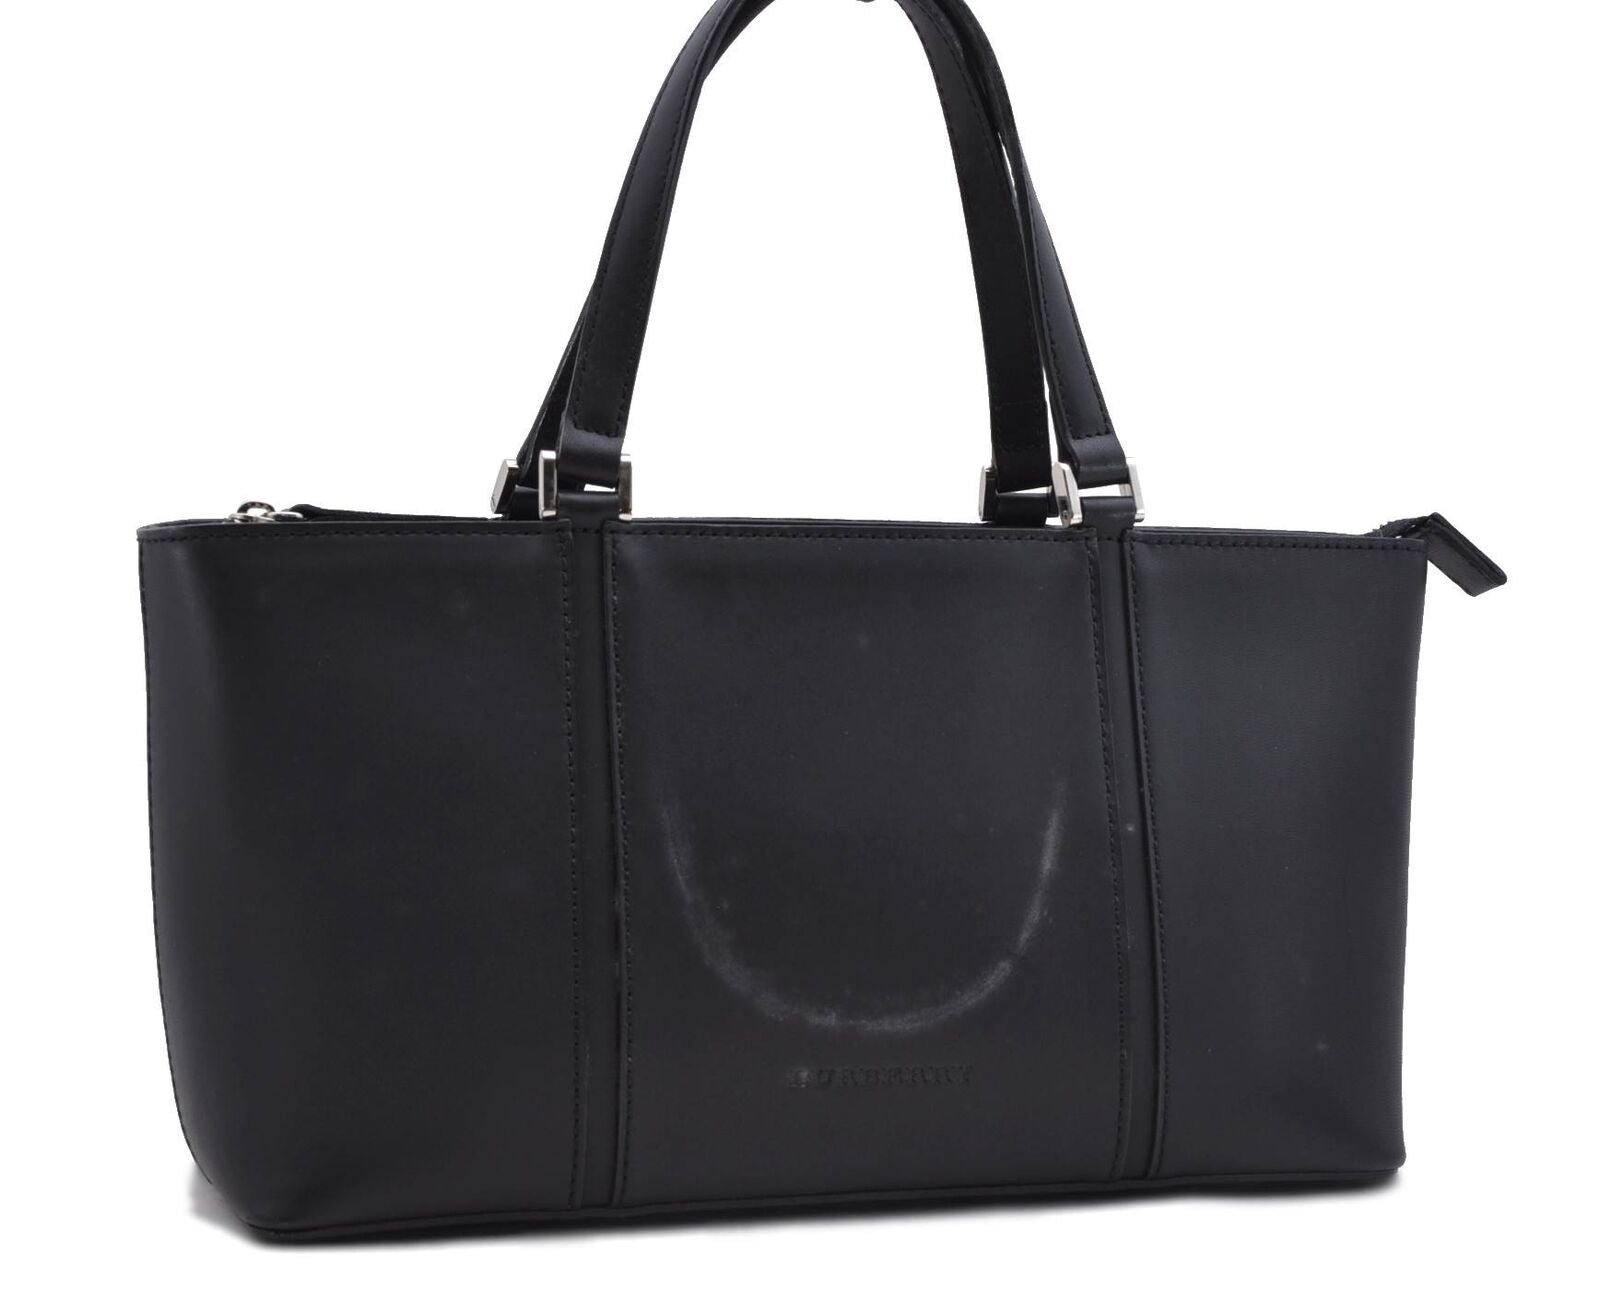 Authentic BURBERRY Vintage Leather Shoulder Hand Bag Purse Black 7587B